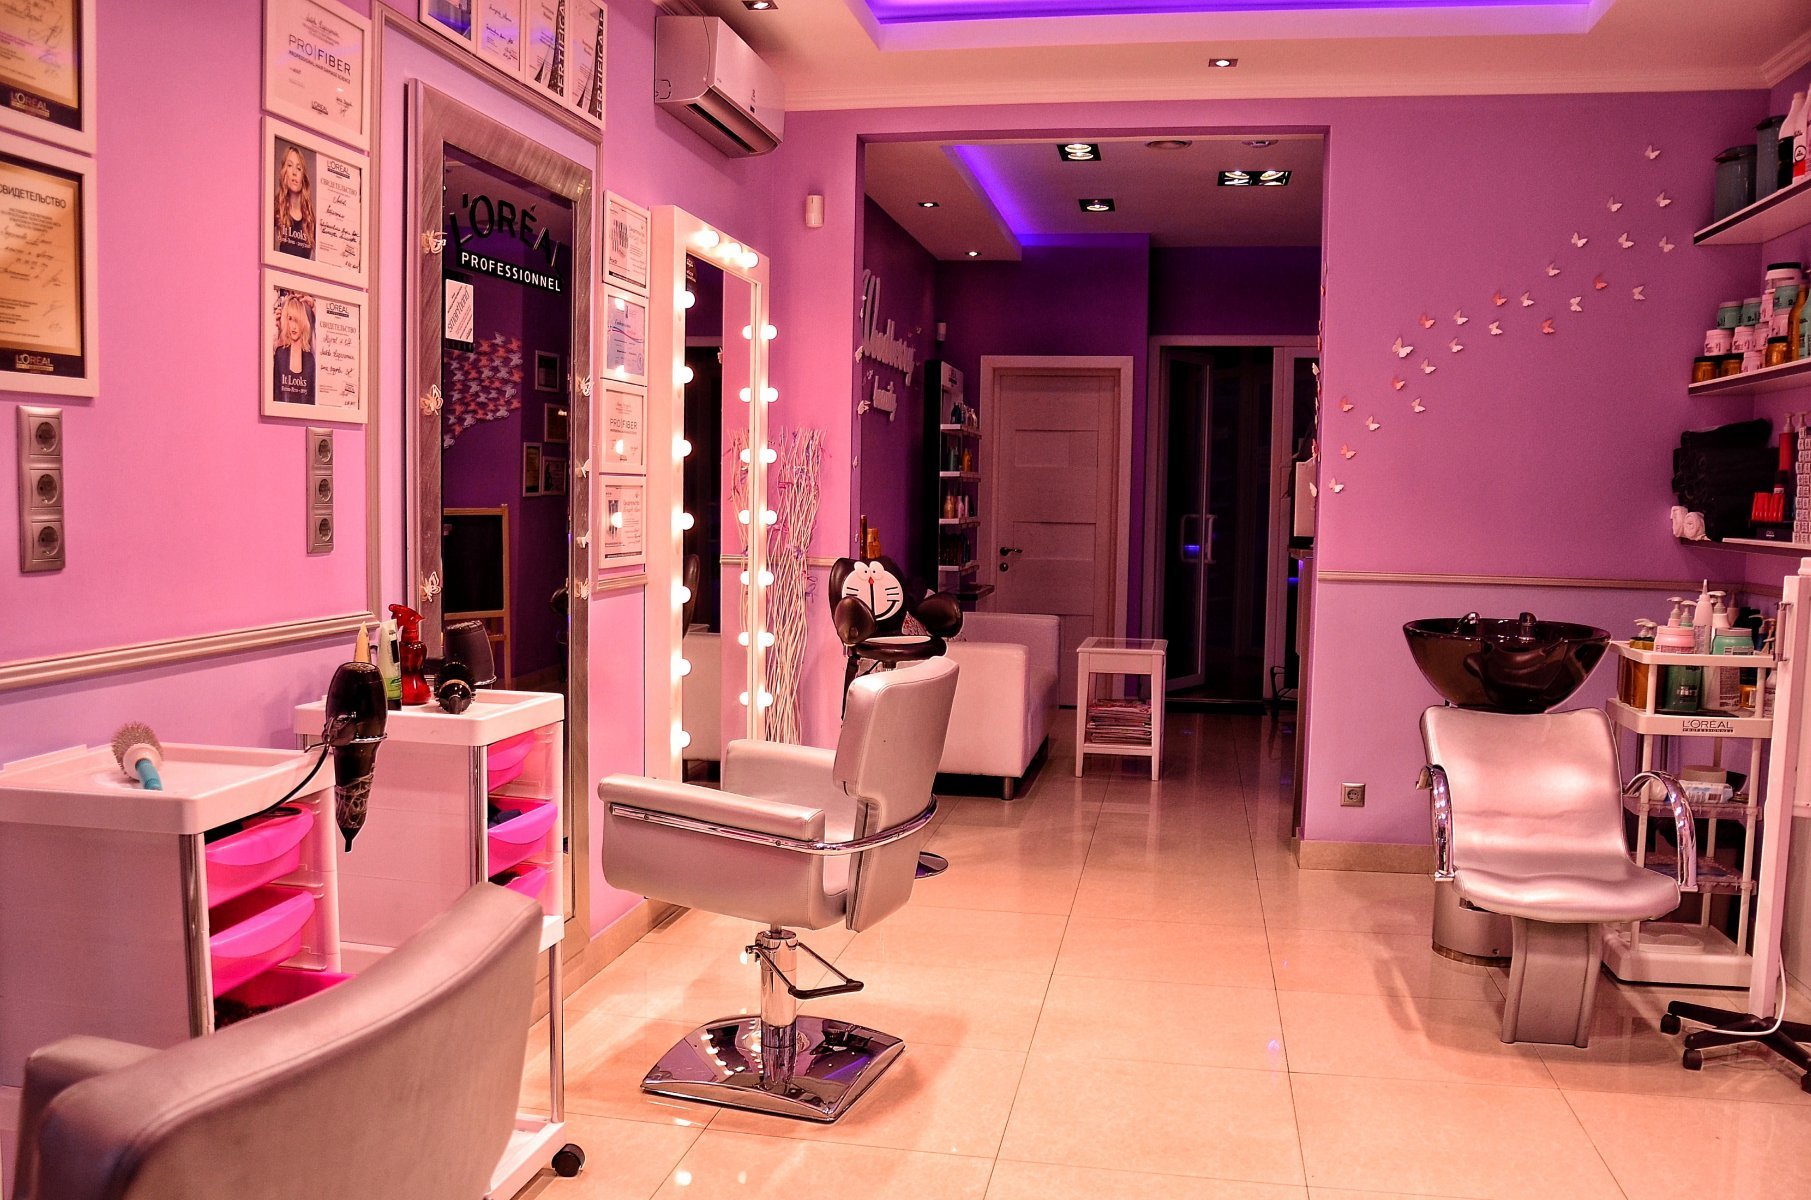 Salon krasoty. Студия красоты Woodberry Beauty. Салон красоты в розовых тонах. Интерьер салона красоты в розовых тонах. Салон в розовом стиле.